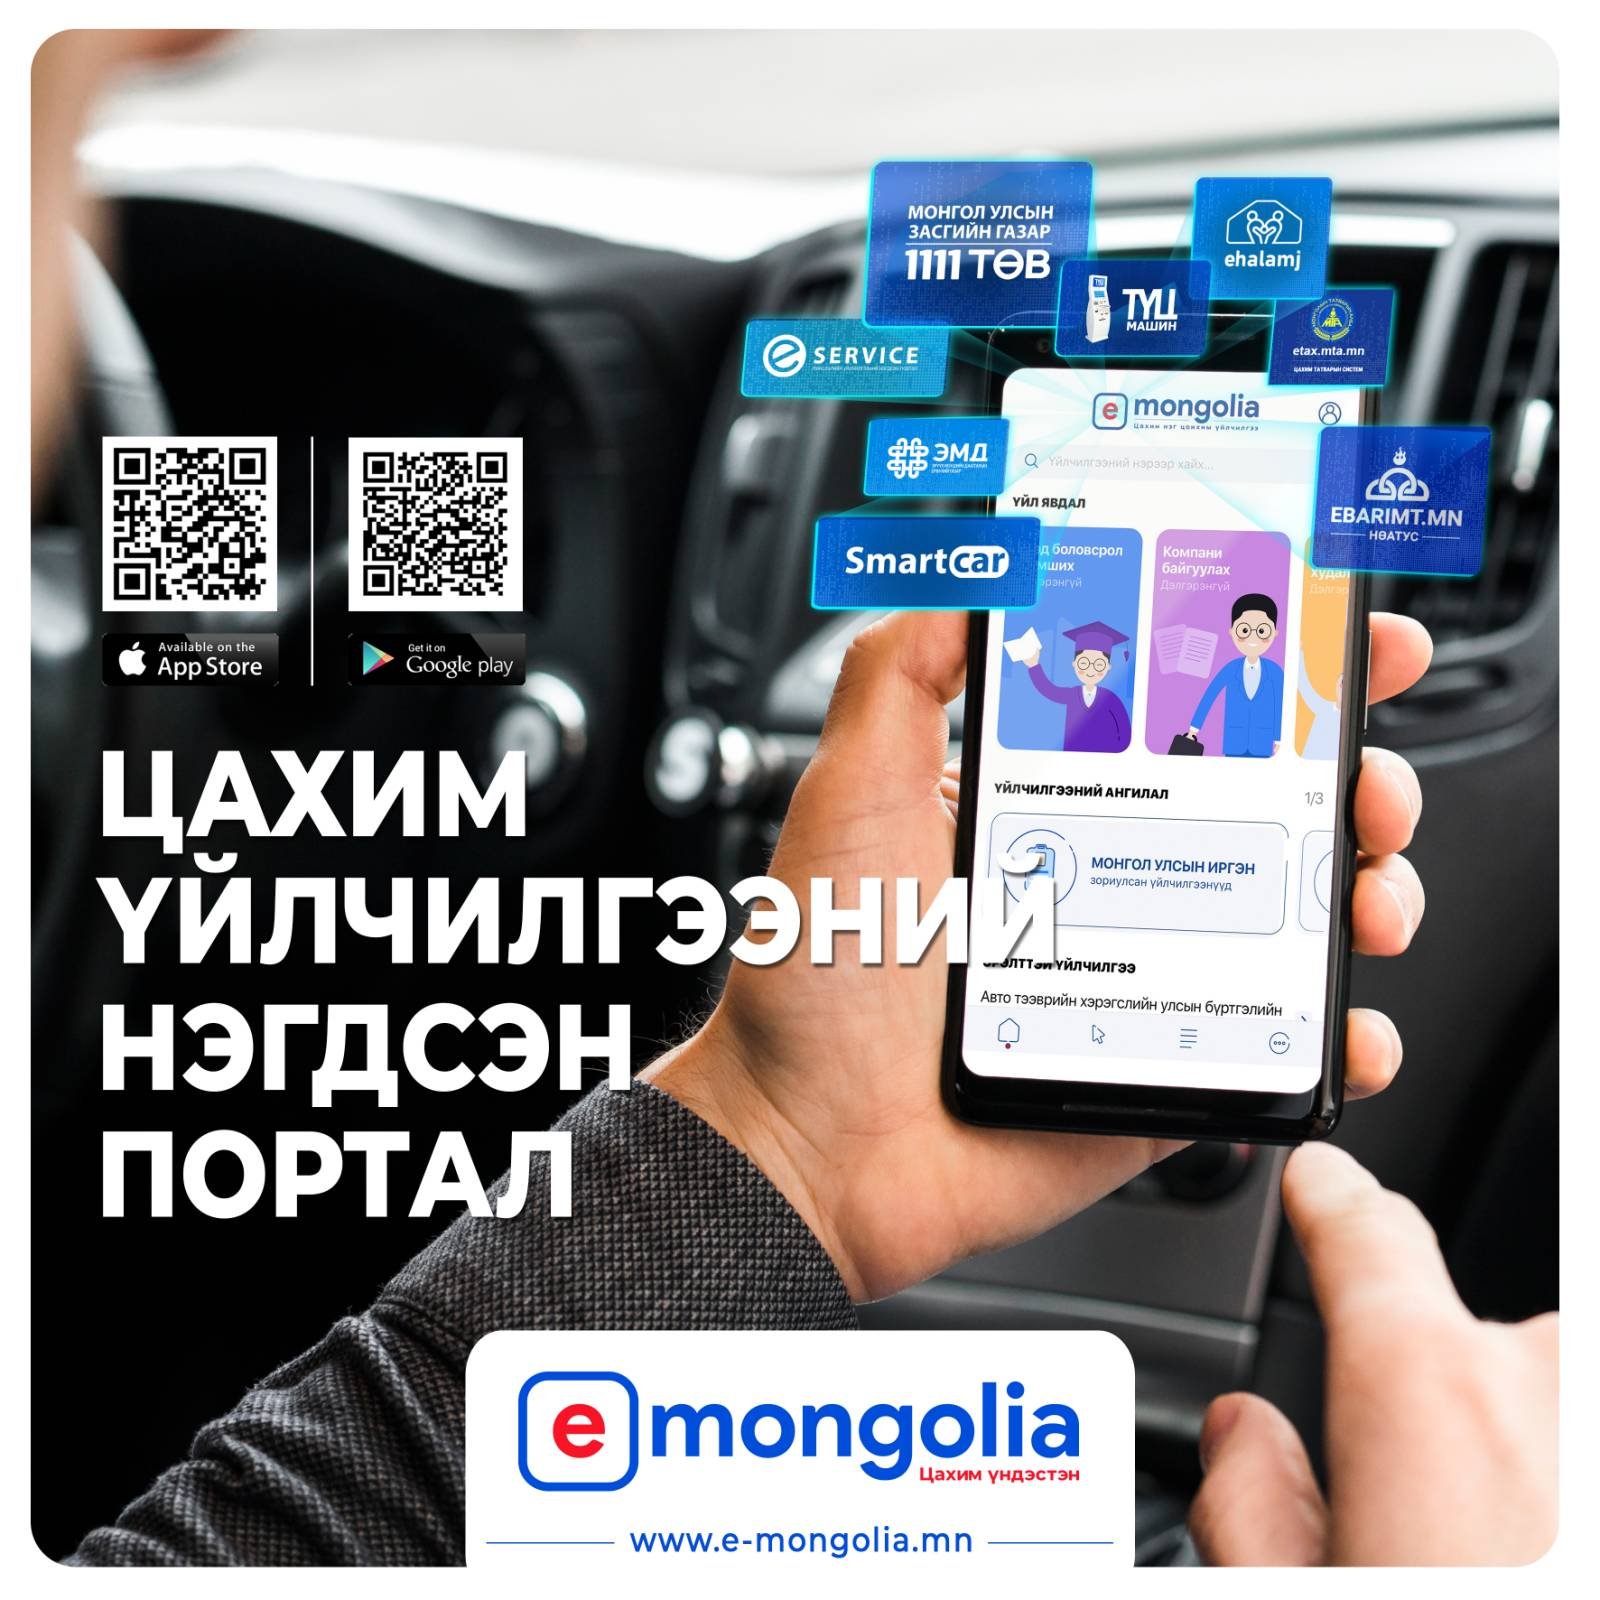 Цахим үйлчилгээний нэгдсэн портал https://e-mongolia.mn/home системийг хэрхэн ашиглах талаар зөвлөмжийг хүргэж байна